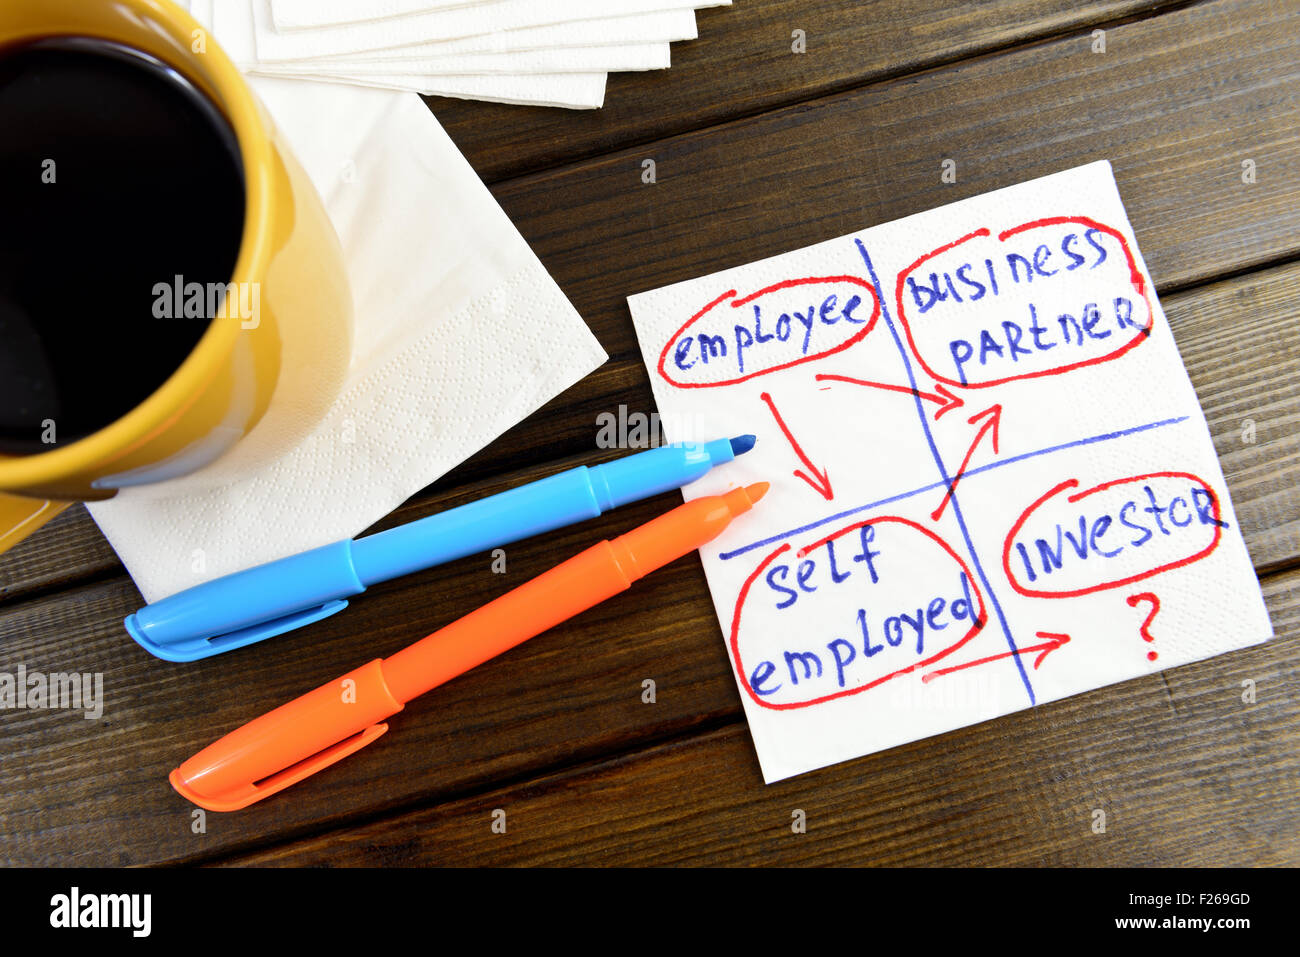 Planung der Karriere denken positiv - Handschrift auf einer Serviette mit einer Tasse Kaffee Stockfoto